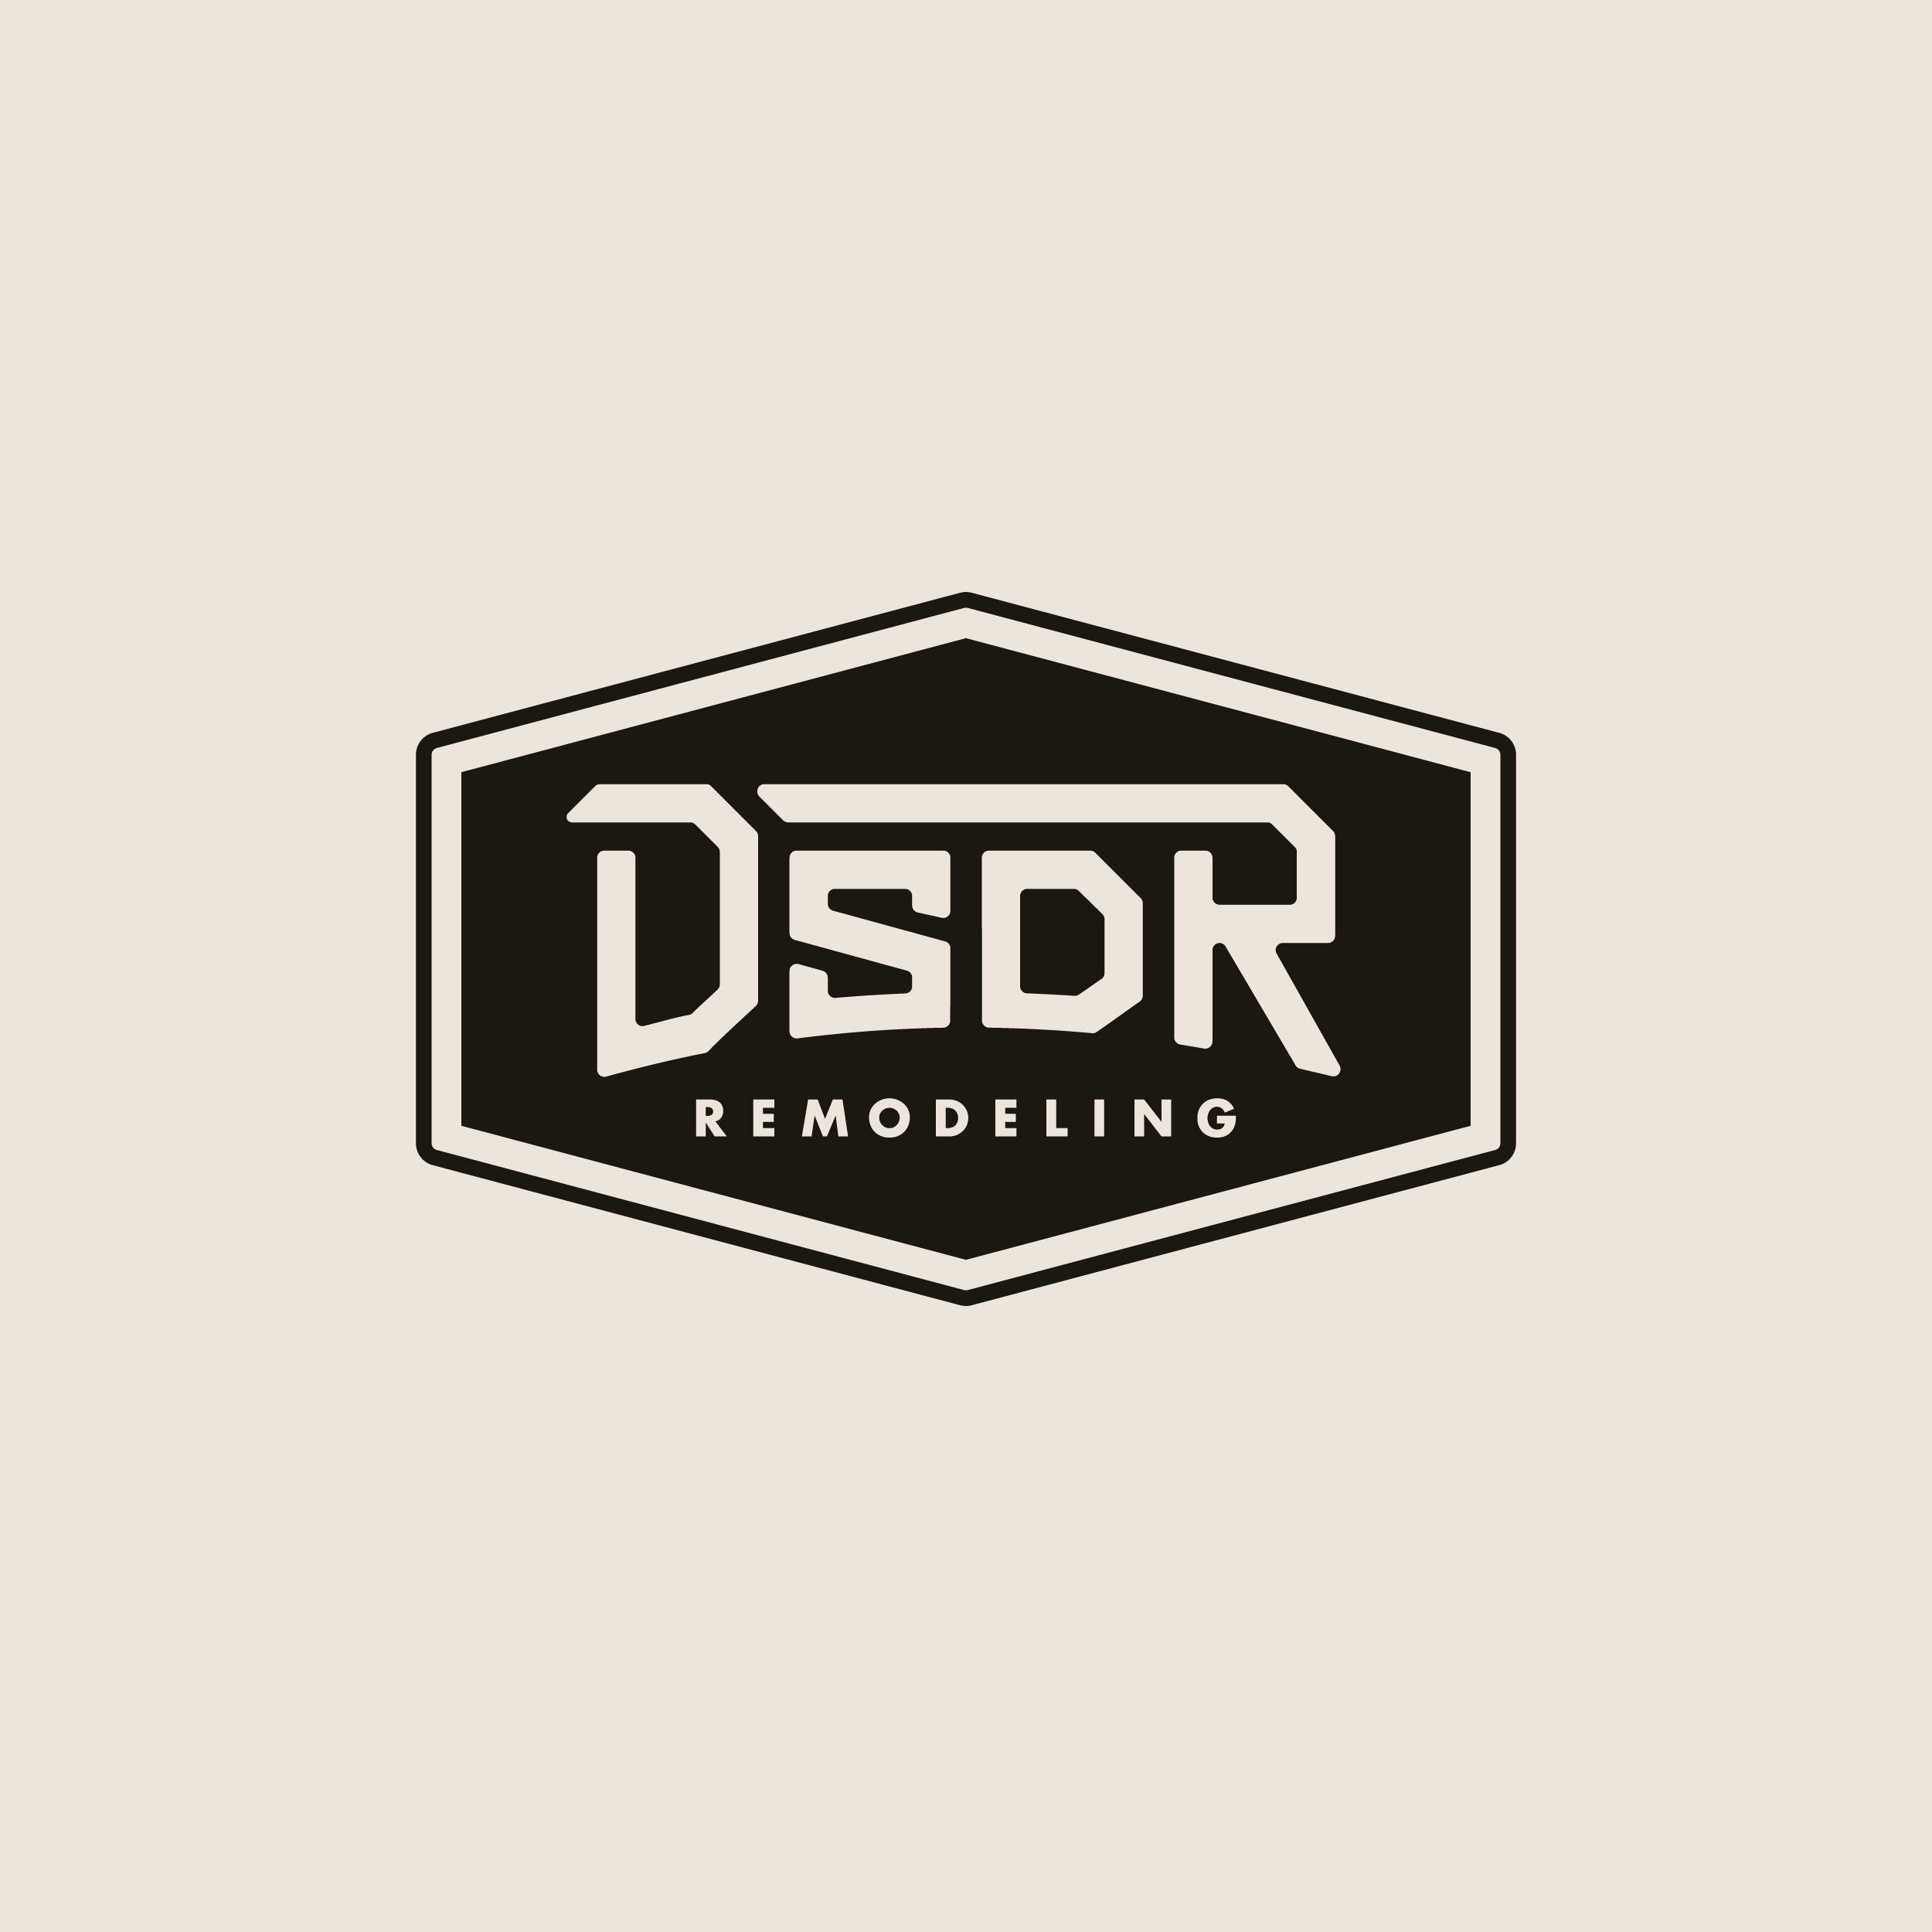 DSDR-Remodeling-Branding_Thumbnail-Light.jpg